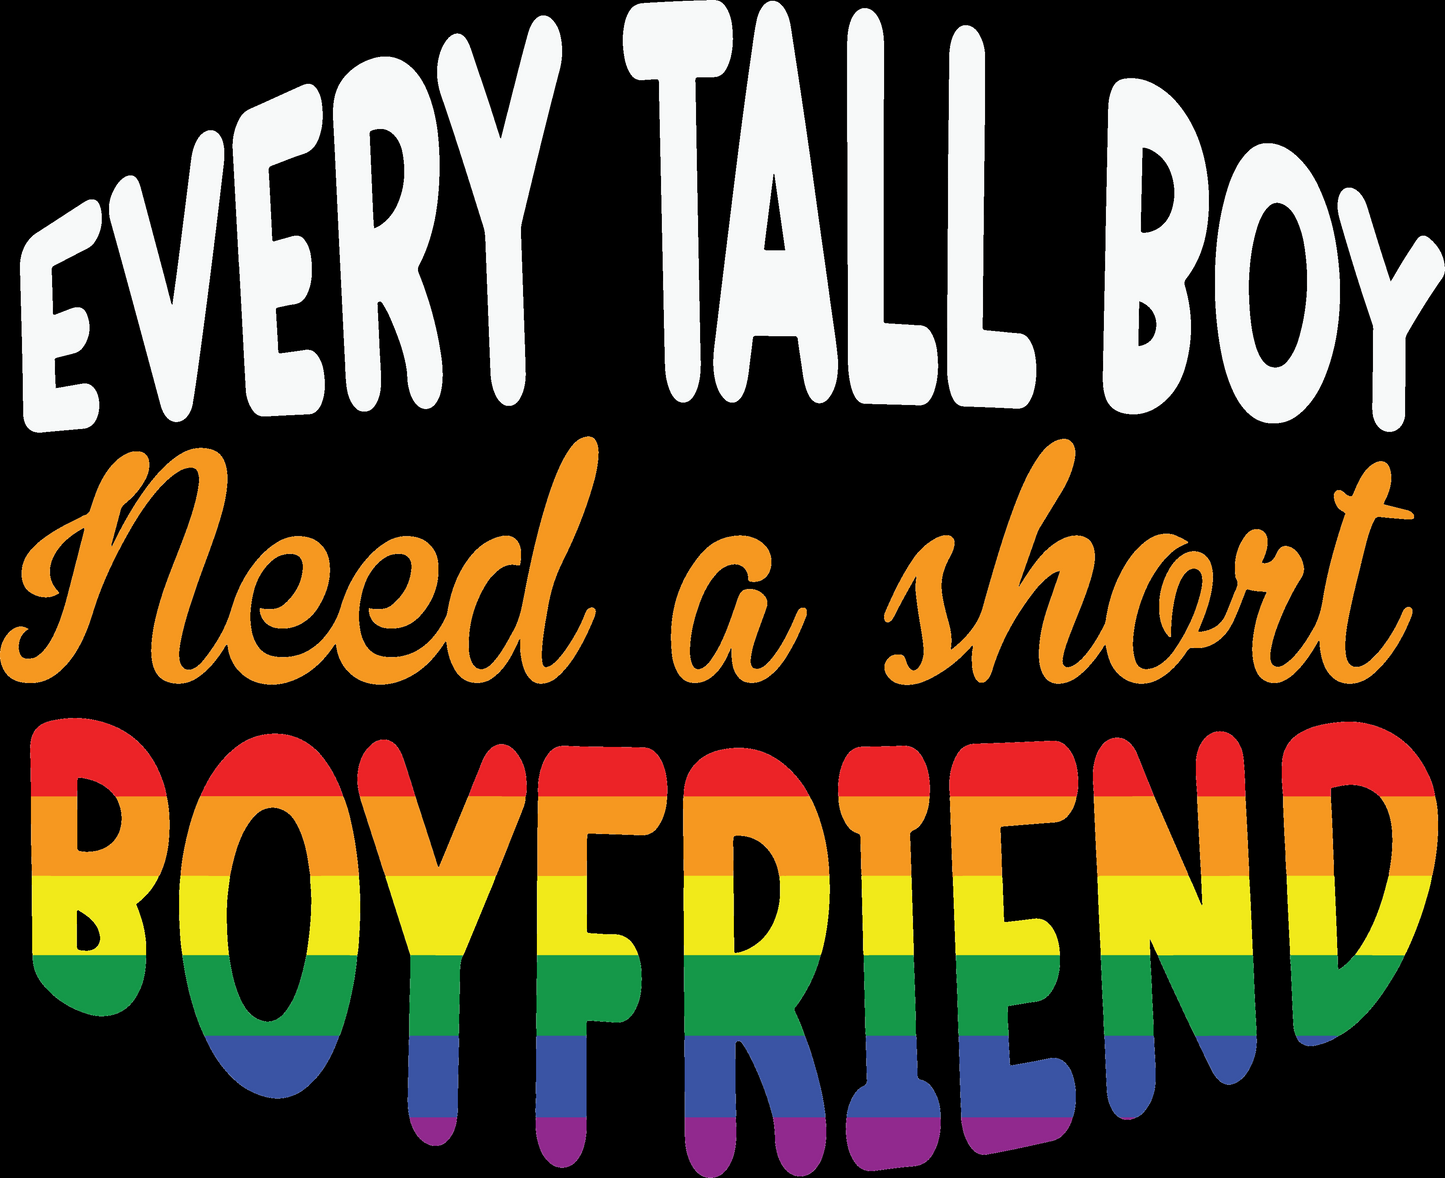 Every Tall Boy Need a Short Boyfriend